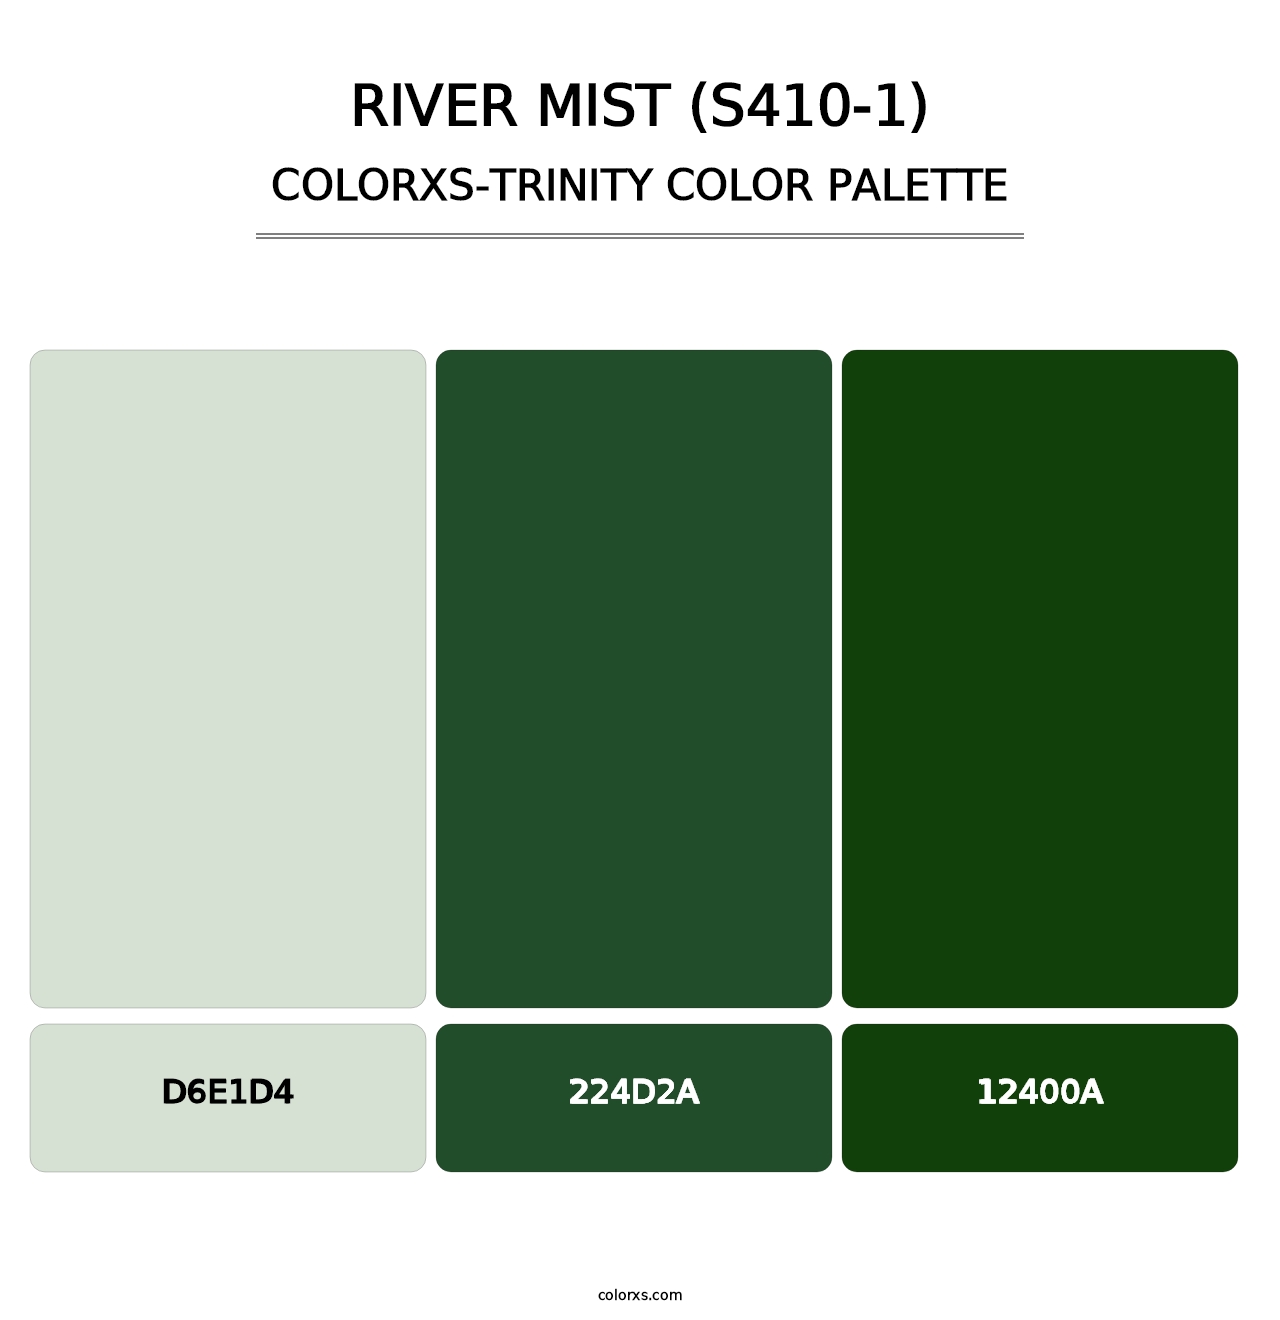 River Mist (S410-1) - Colorxs Trinity Palette